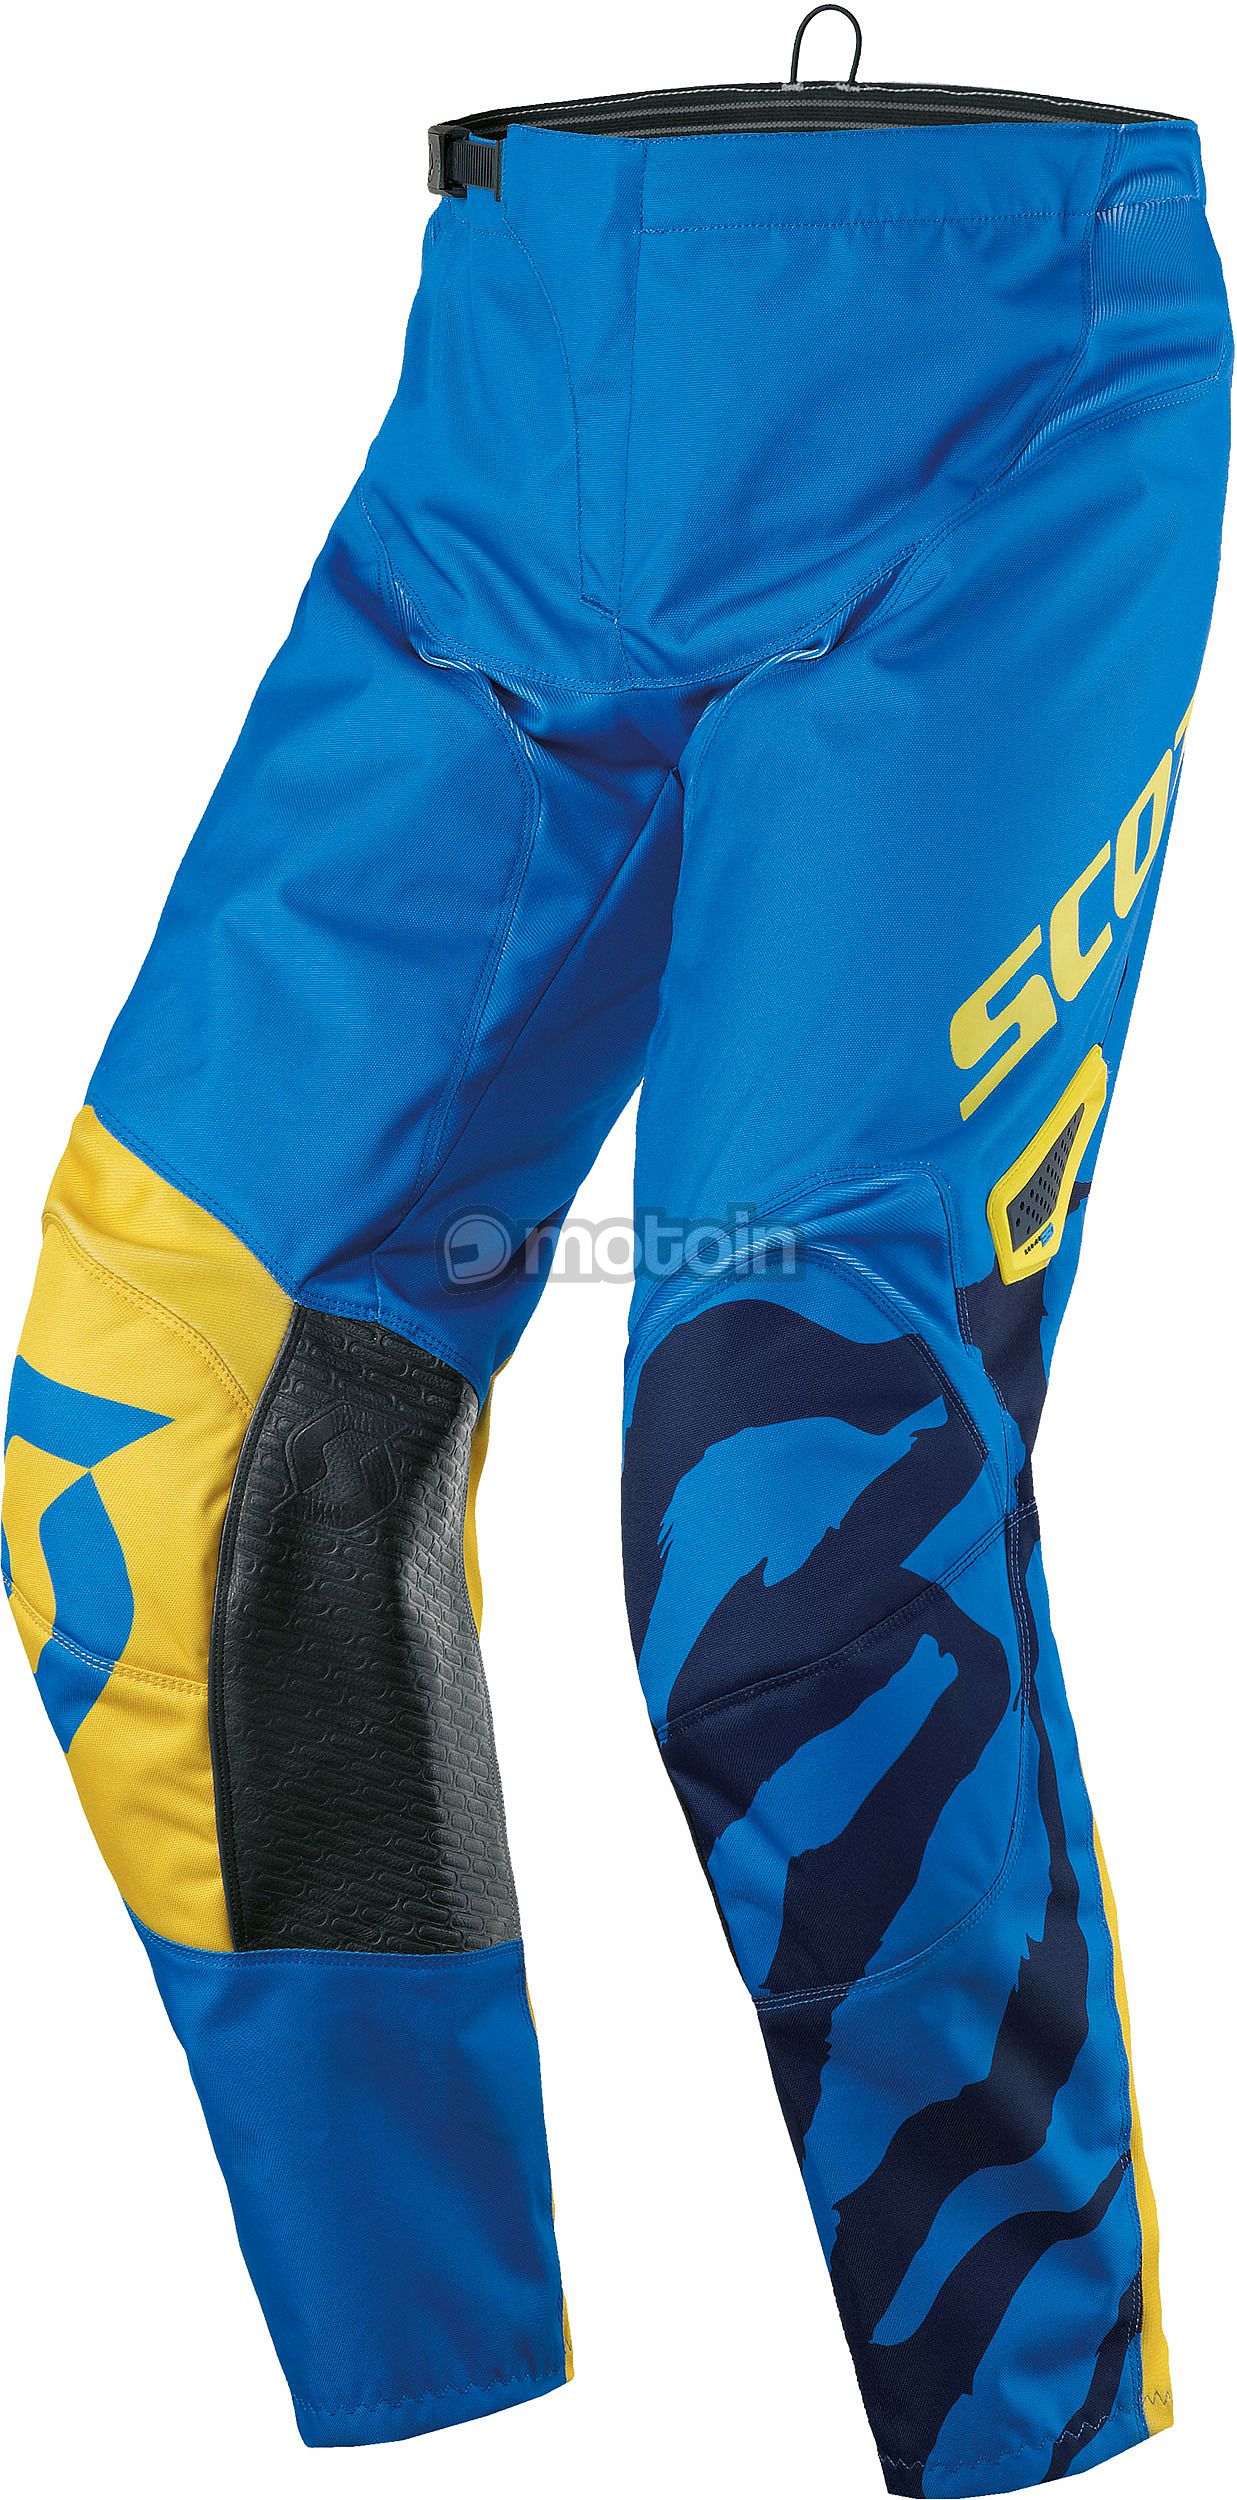 Scott 350 Race, pantaloni tessili per bambini